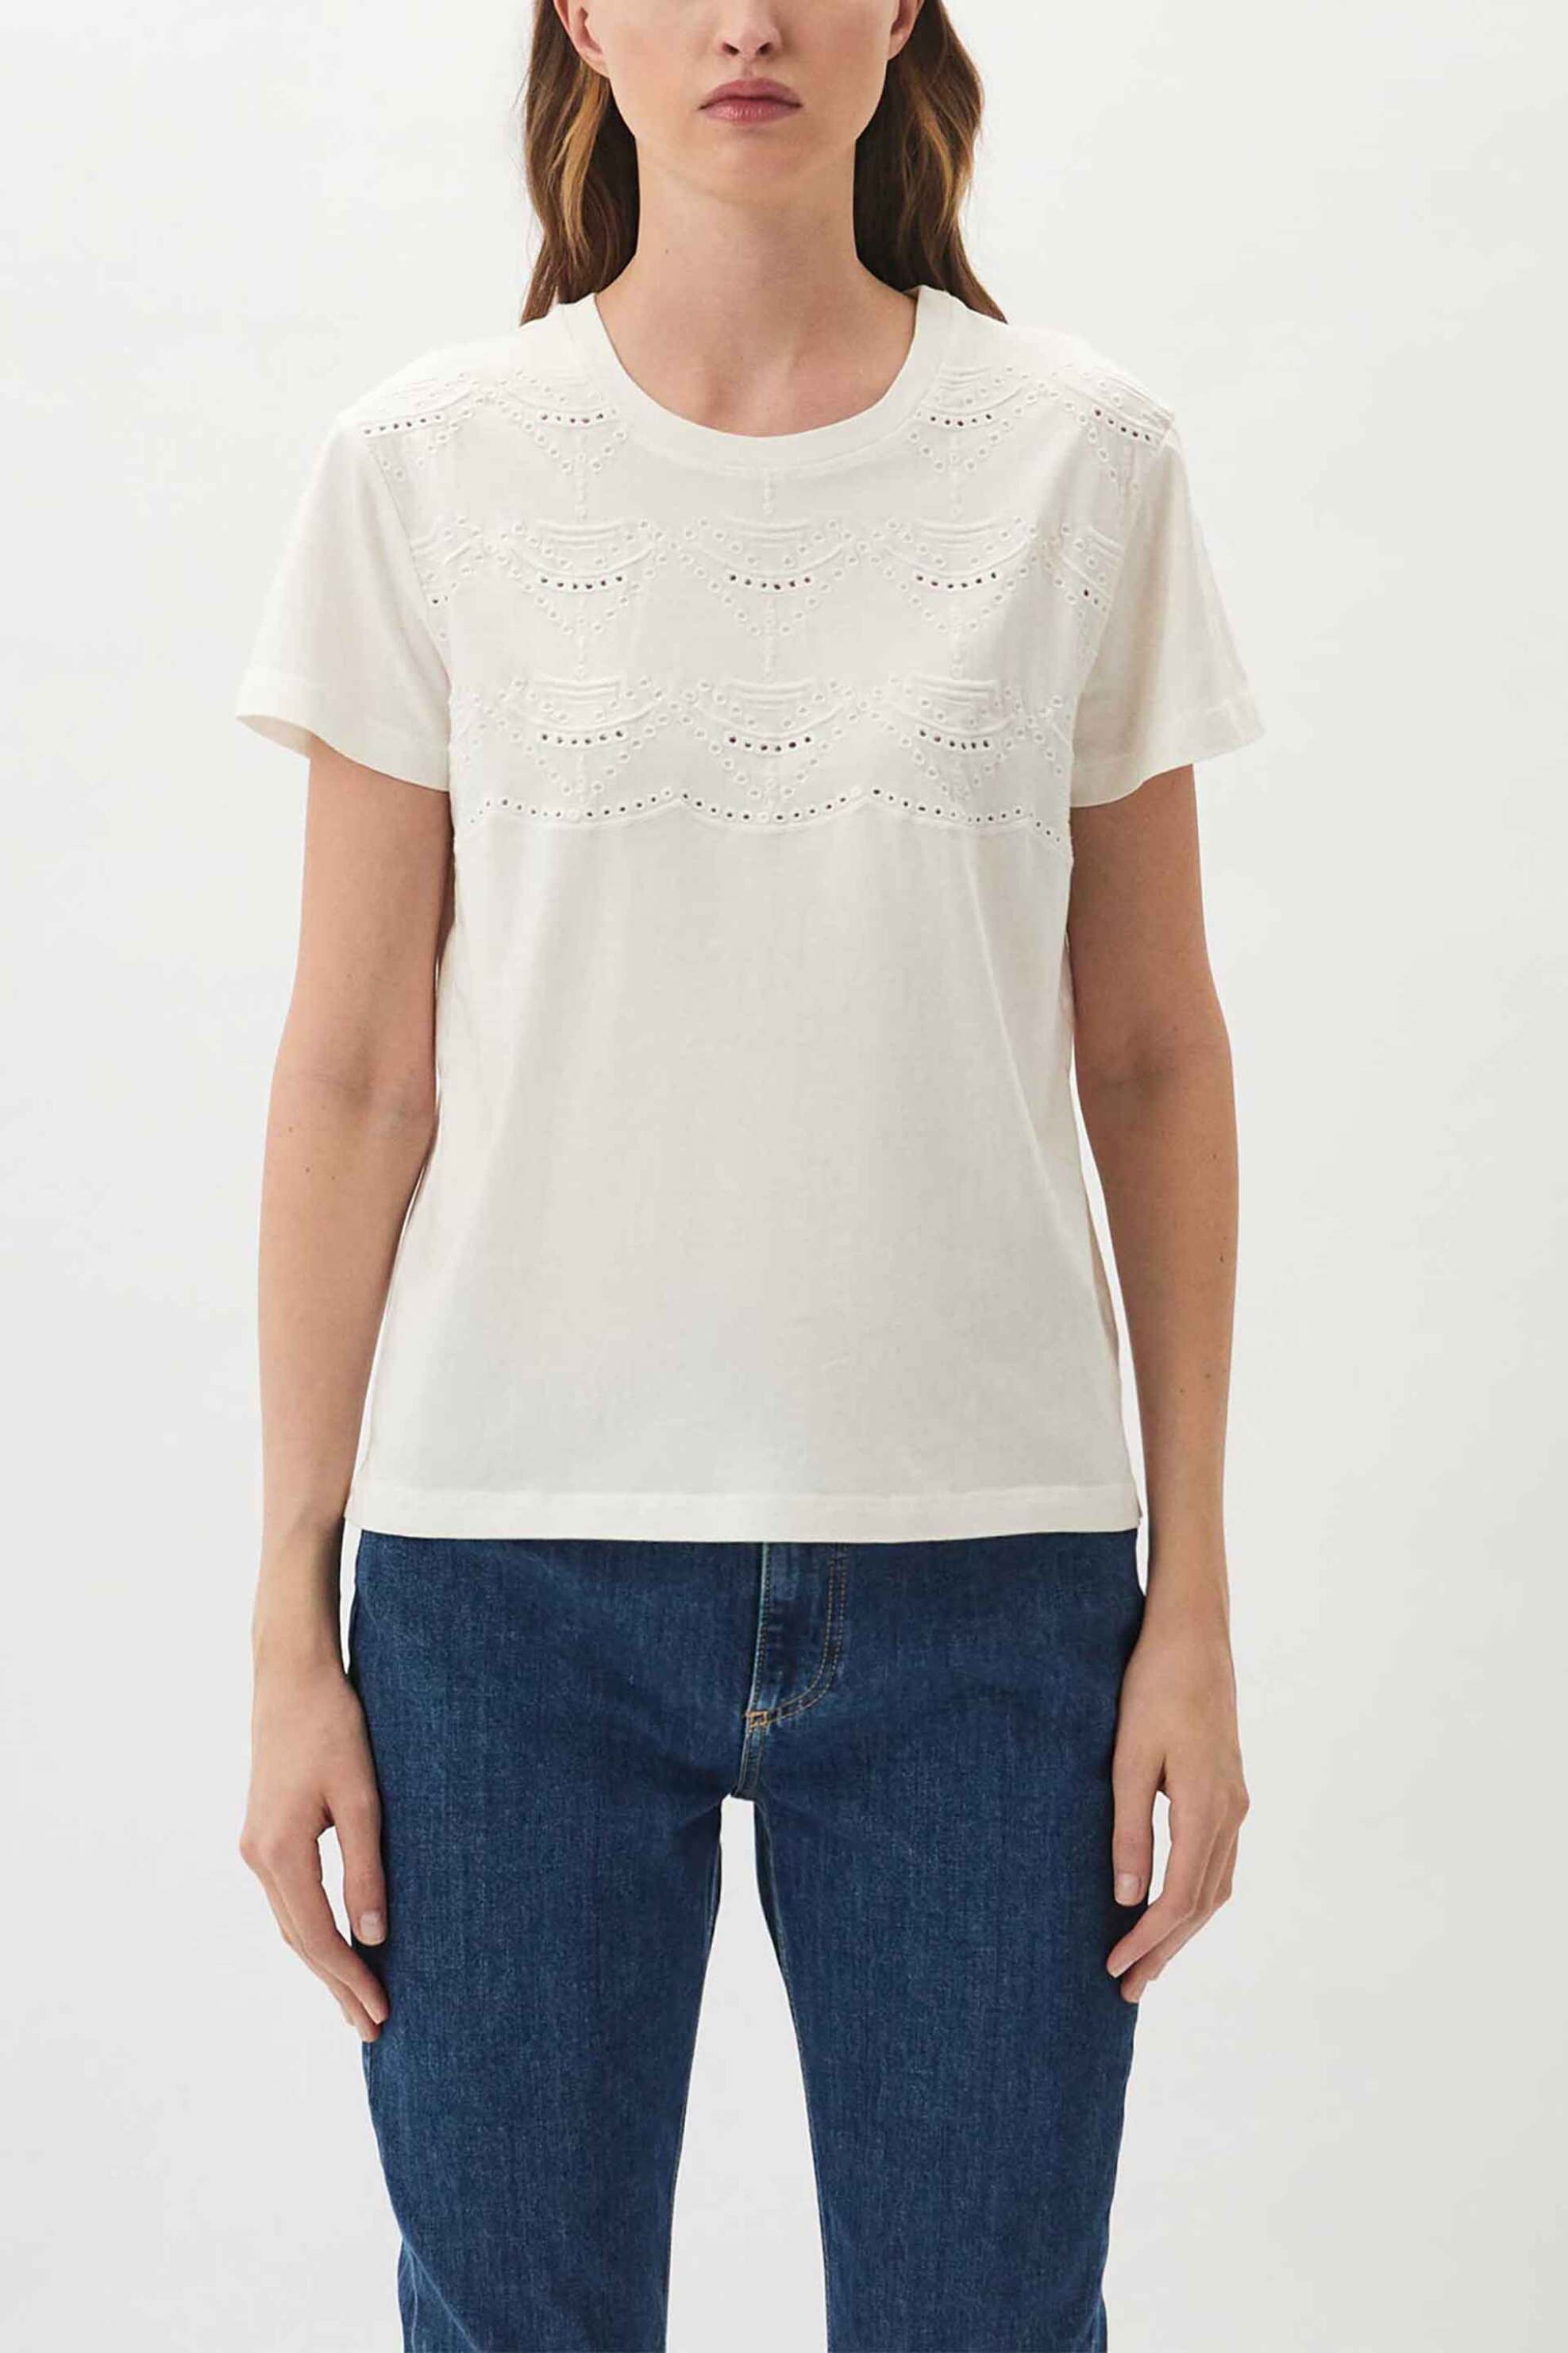 Γυναικεία Ρούχα & Αξεσουάρ > Γυναικεία Ρούχα > Γυναικεία Τοπ > Γυναικεία T-Shirts Emme by Marella γυναικείο βαμβακερό T-shirt μονόχρωμο με ανάγλυφο σχέδιο μπροστά - 2415971041 Λευκό